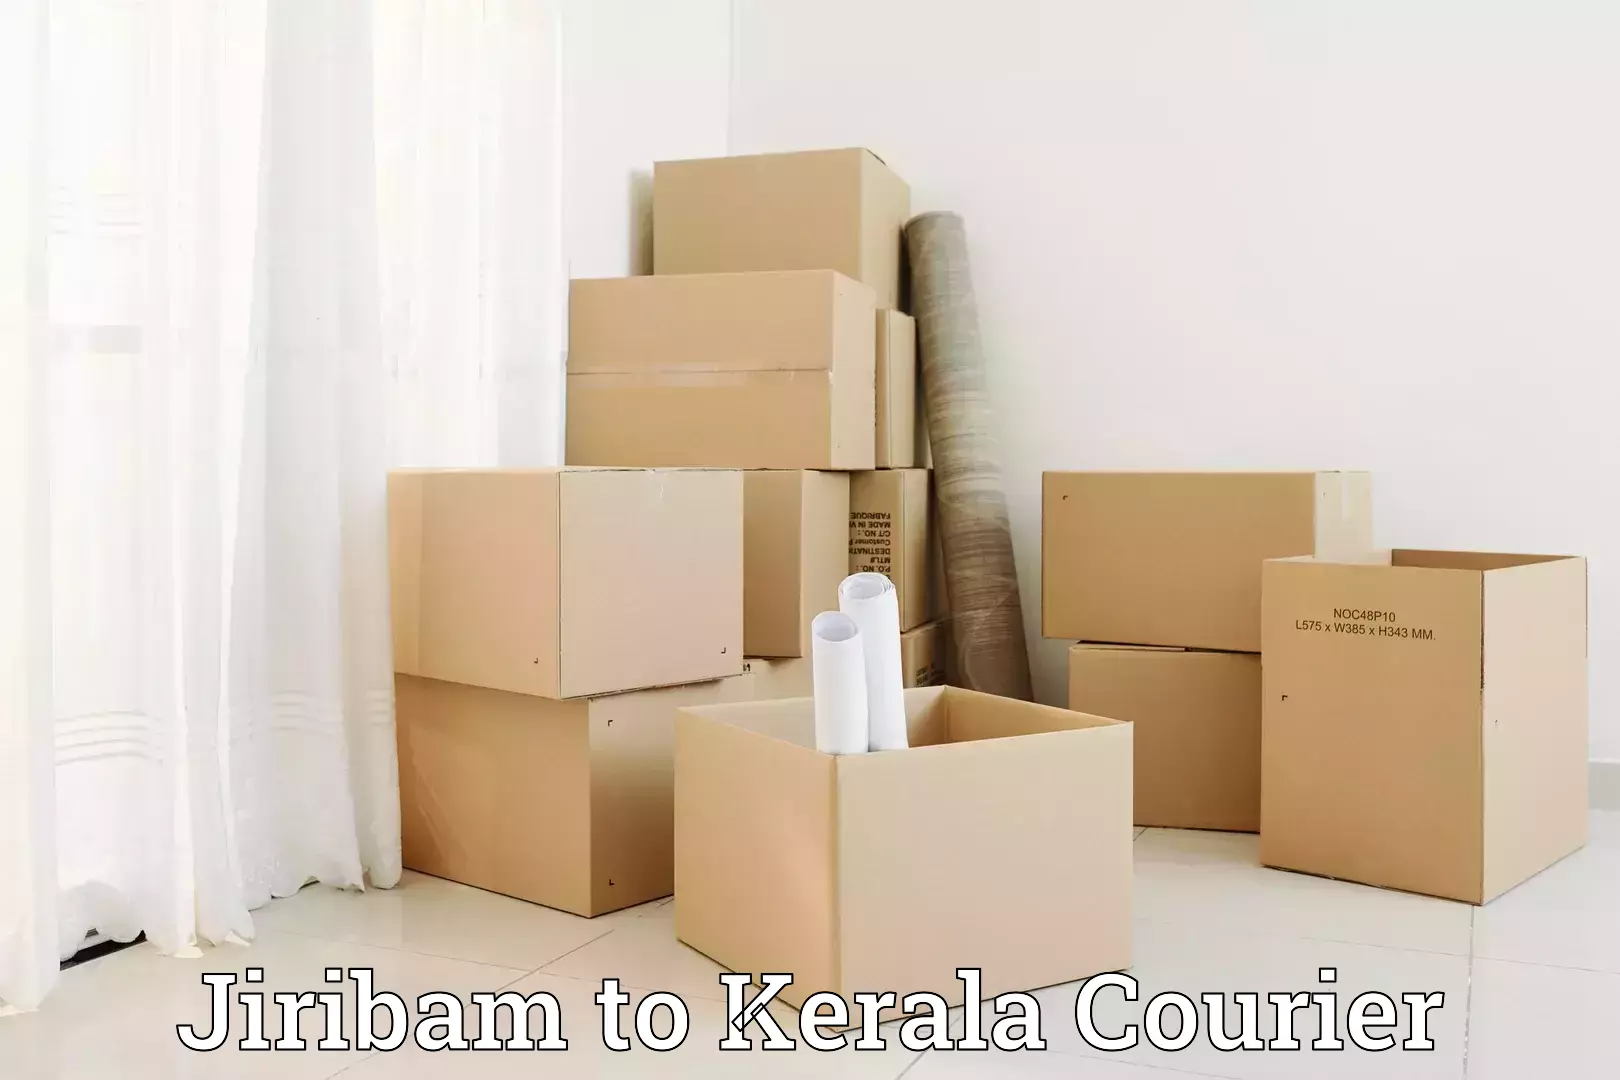 Baggage delivery planning Jiribam to Thiruvananthapuram